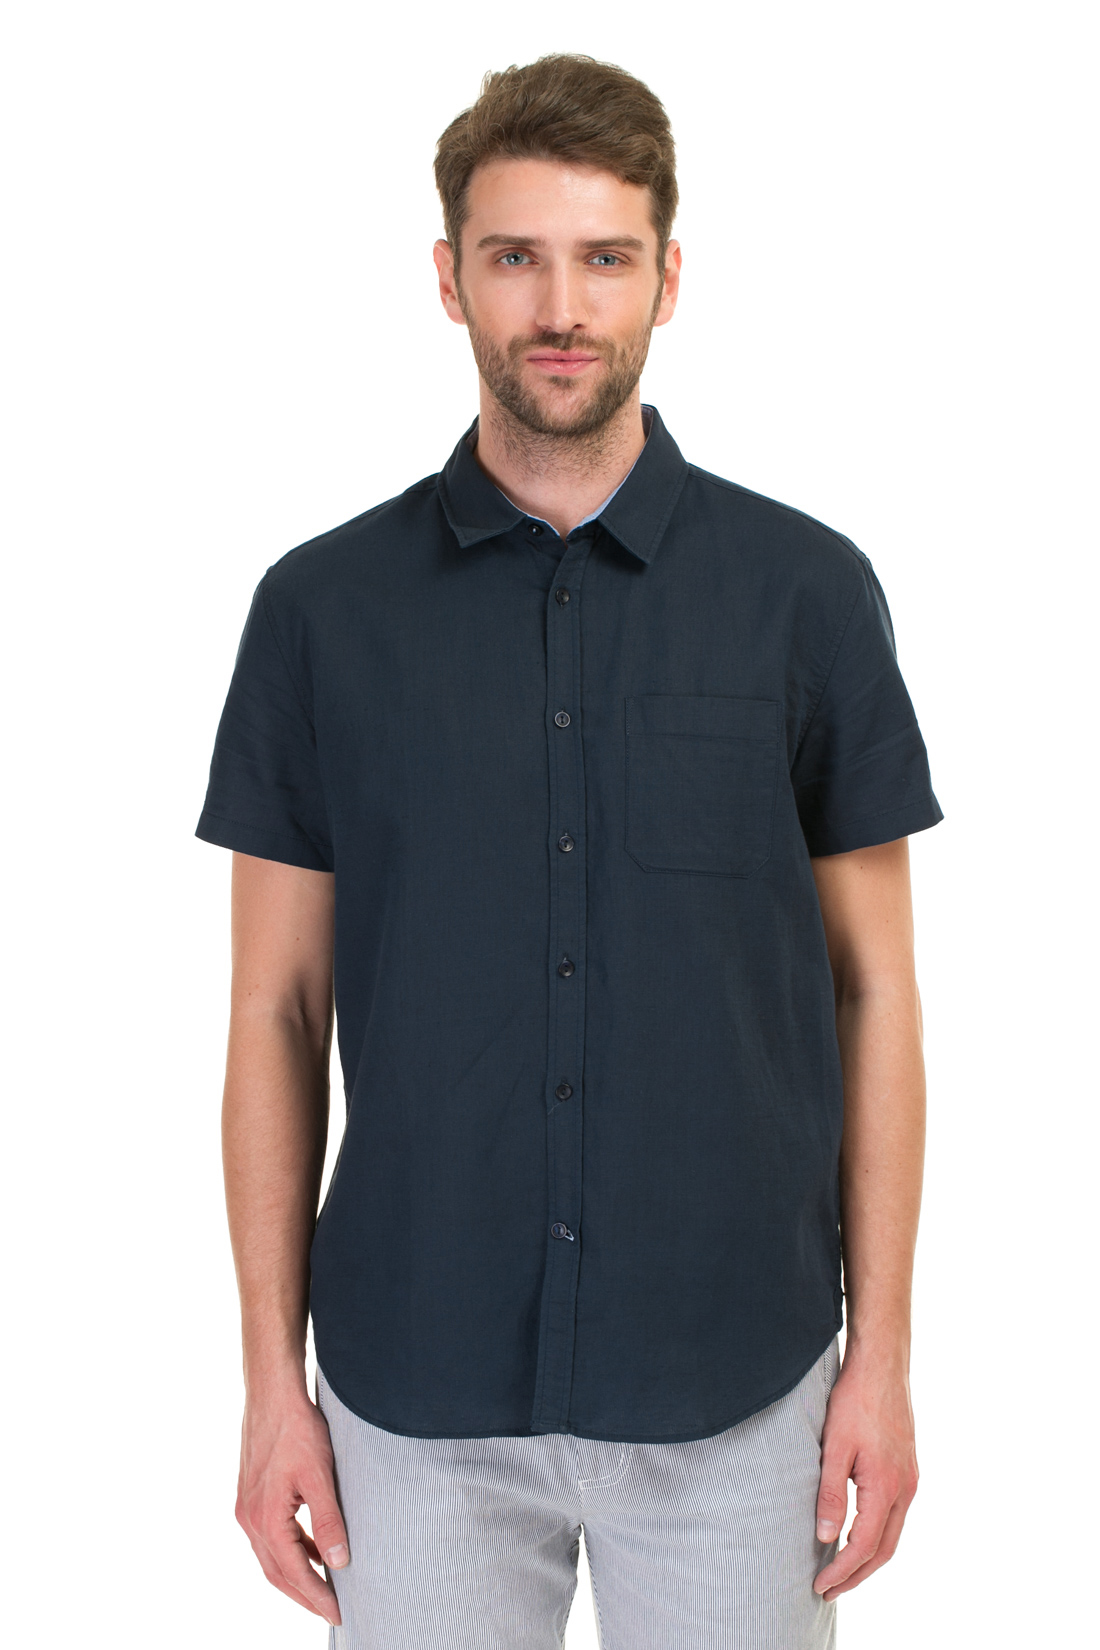 Рубашка с коротким рукавом из натуральных материалов (арт. baon B687001), размер 3XL, цвет синий